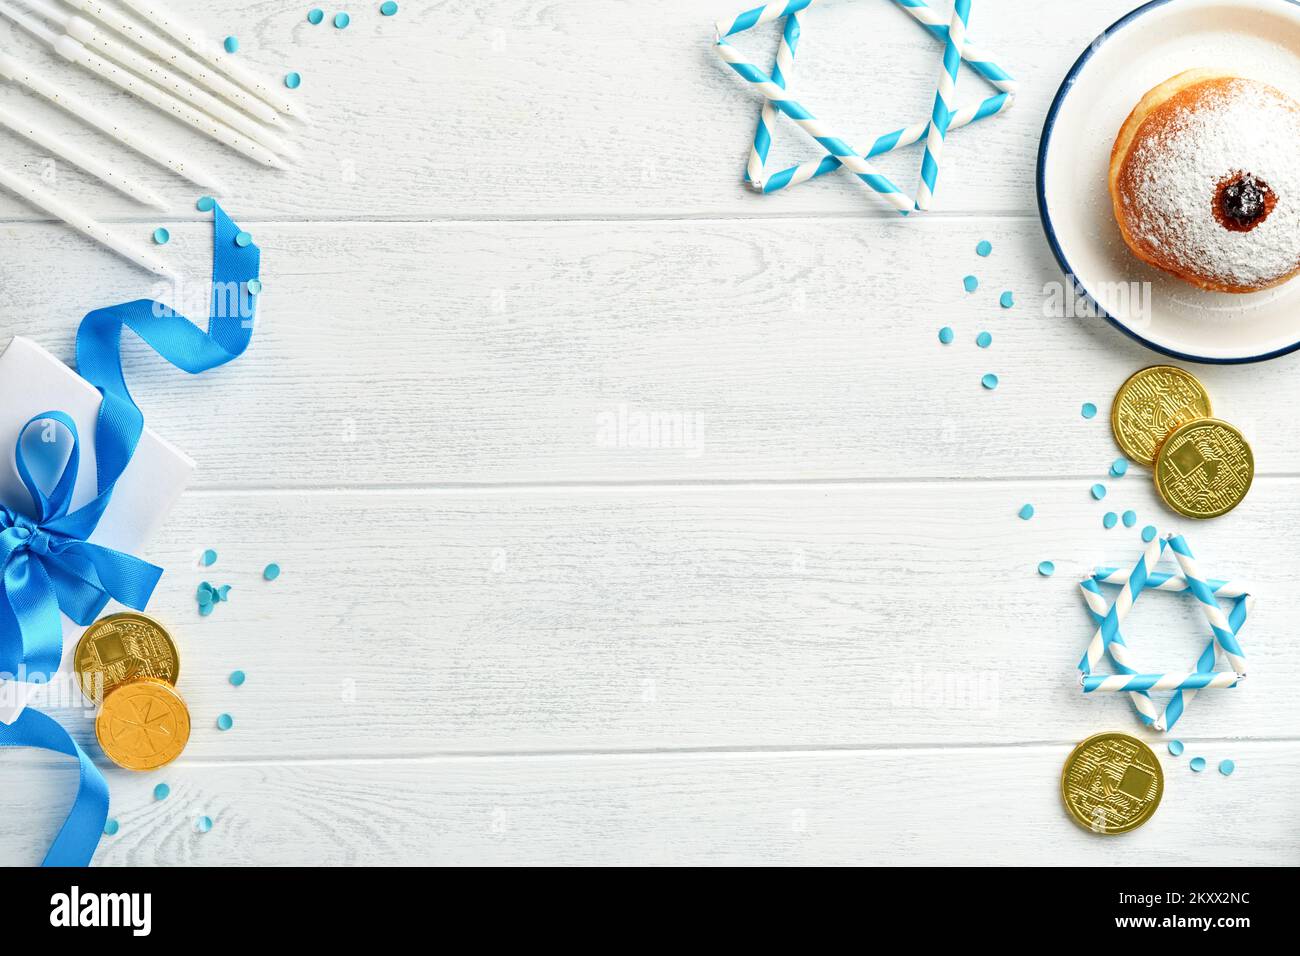 Frohes Chanukka. Süße Hanukka-Donuts, Geschenkschachteln, weiße Kerzen und Schokoladenmünzen auf weißem Holzhintergrund. Bild und Begriff jüdischer Holida Stockfoto